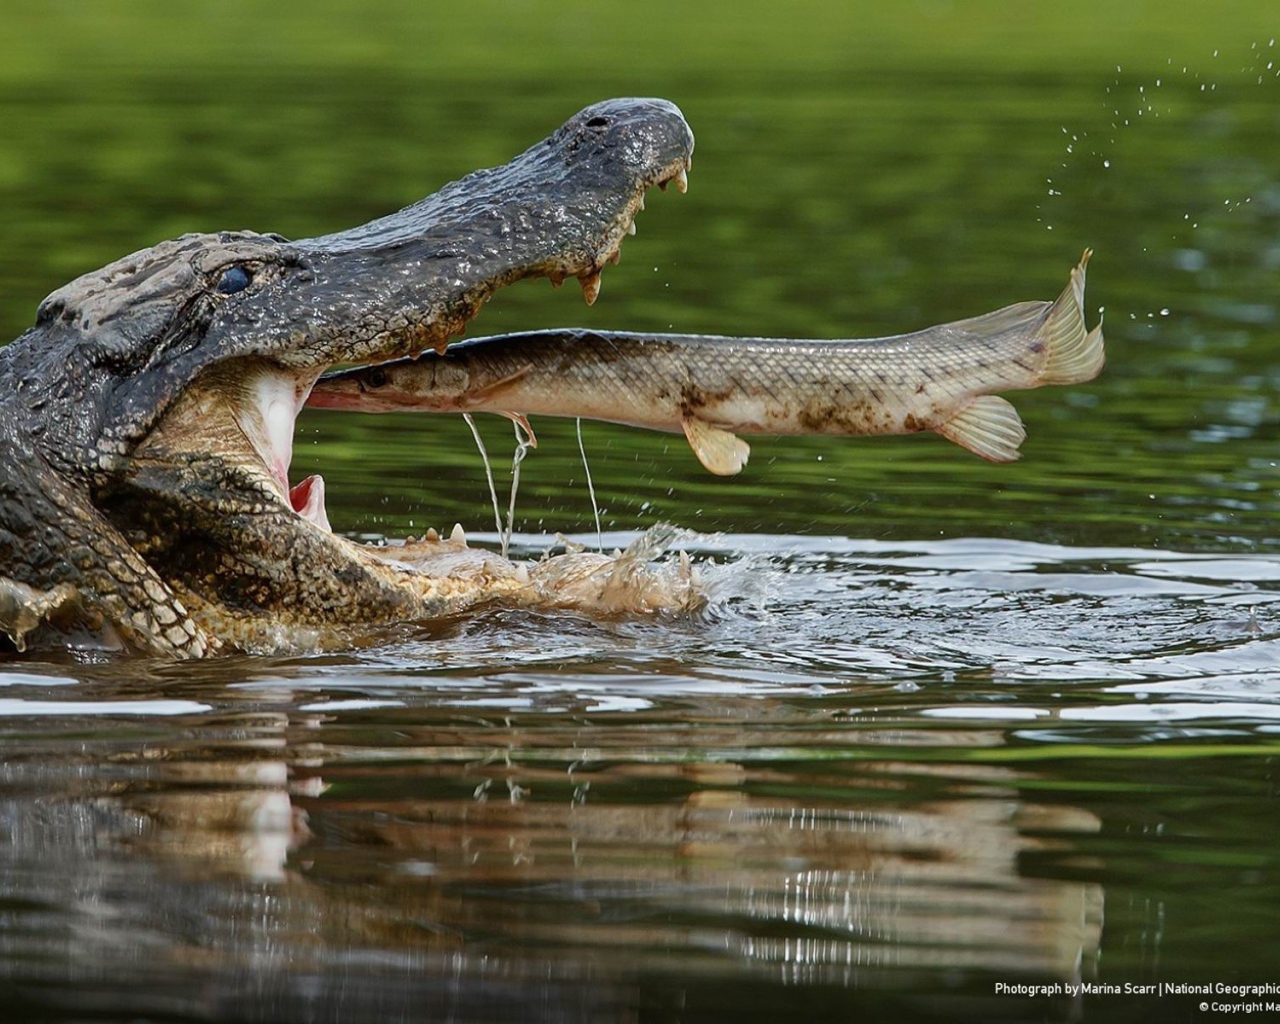 Рыба во рту крокодила